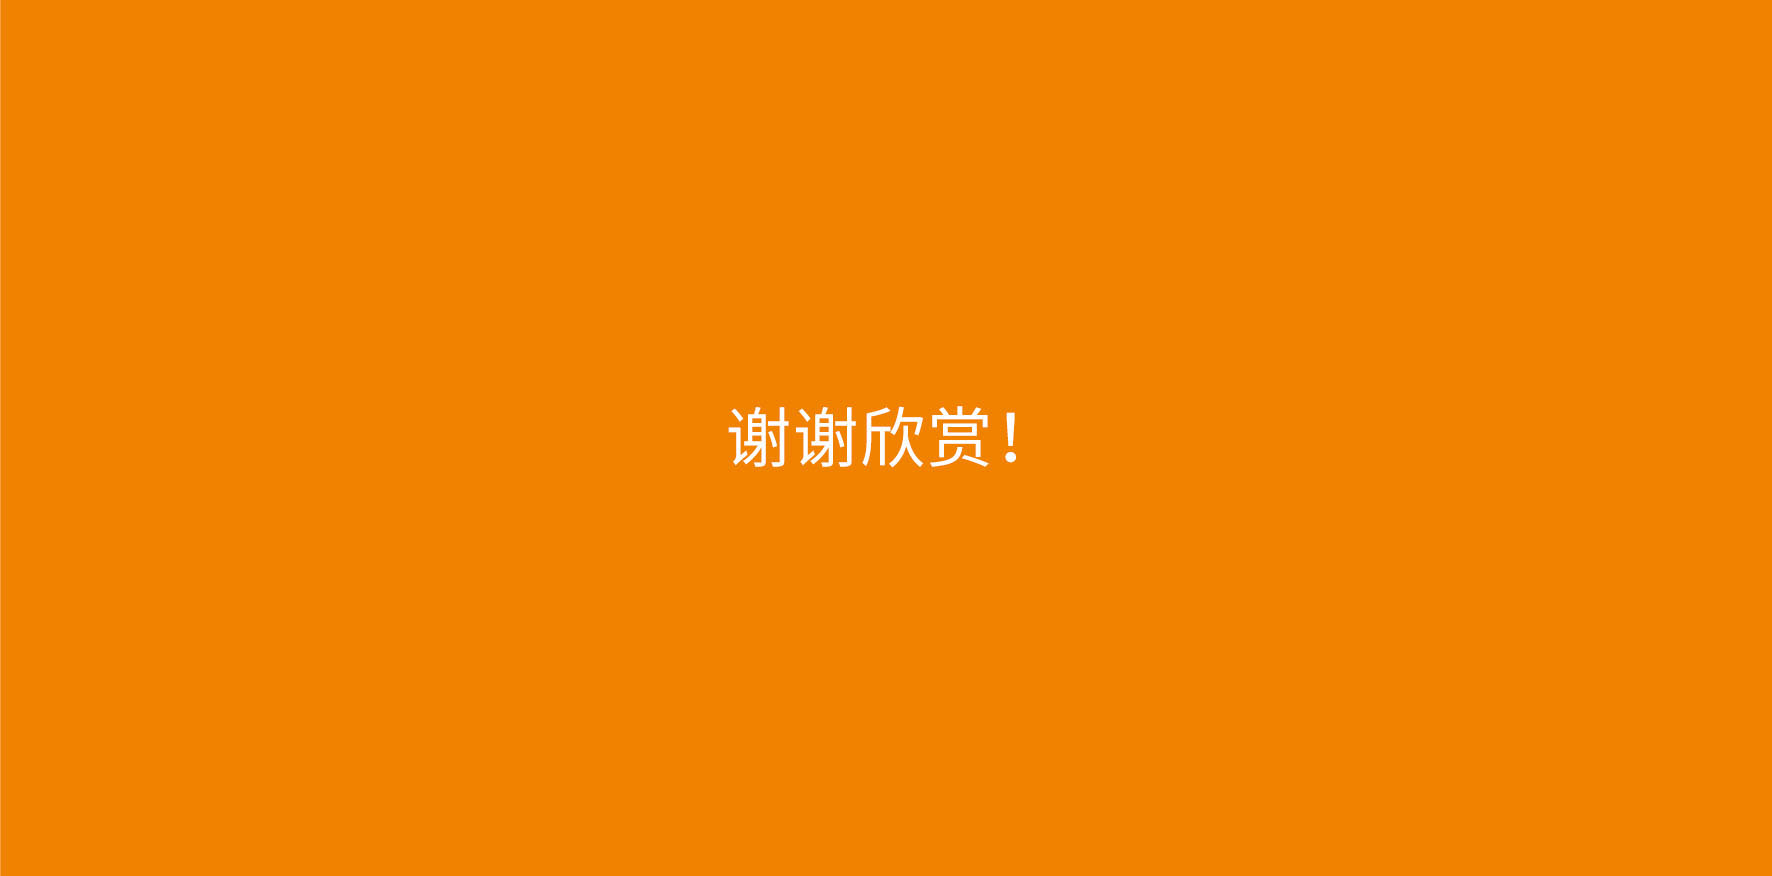 广州养生logo设计-智慧美好生活标志设计21